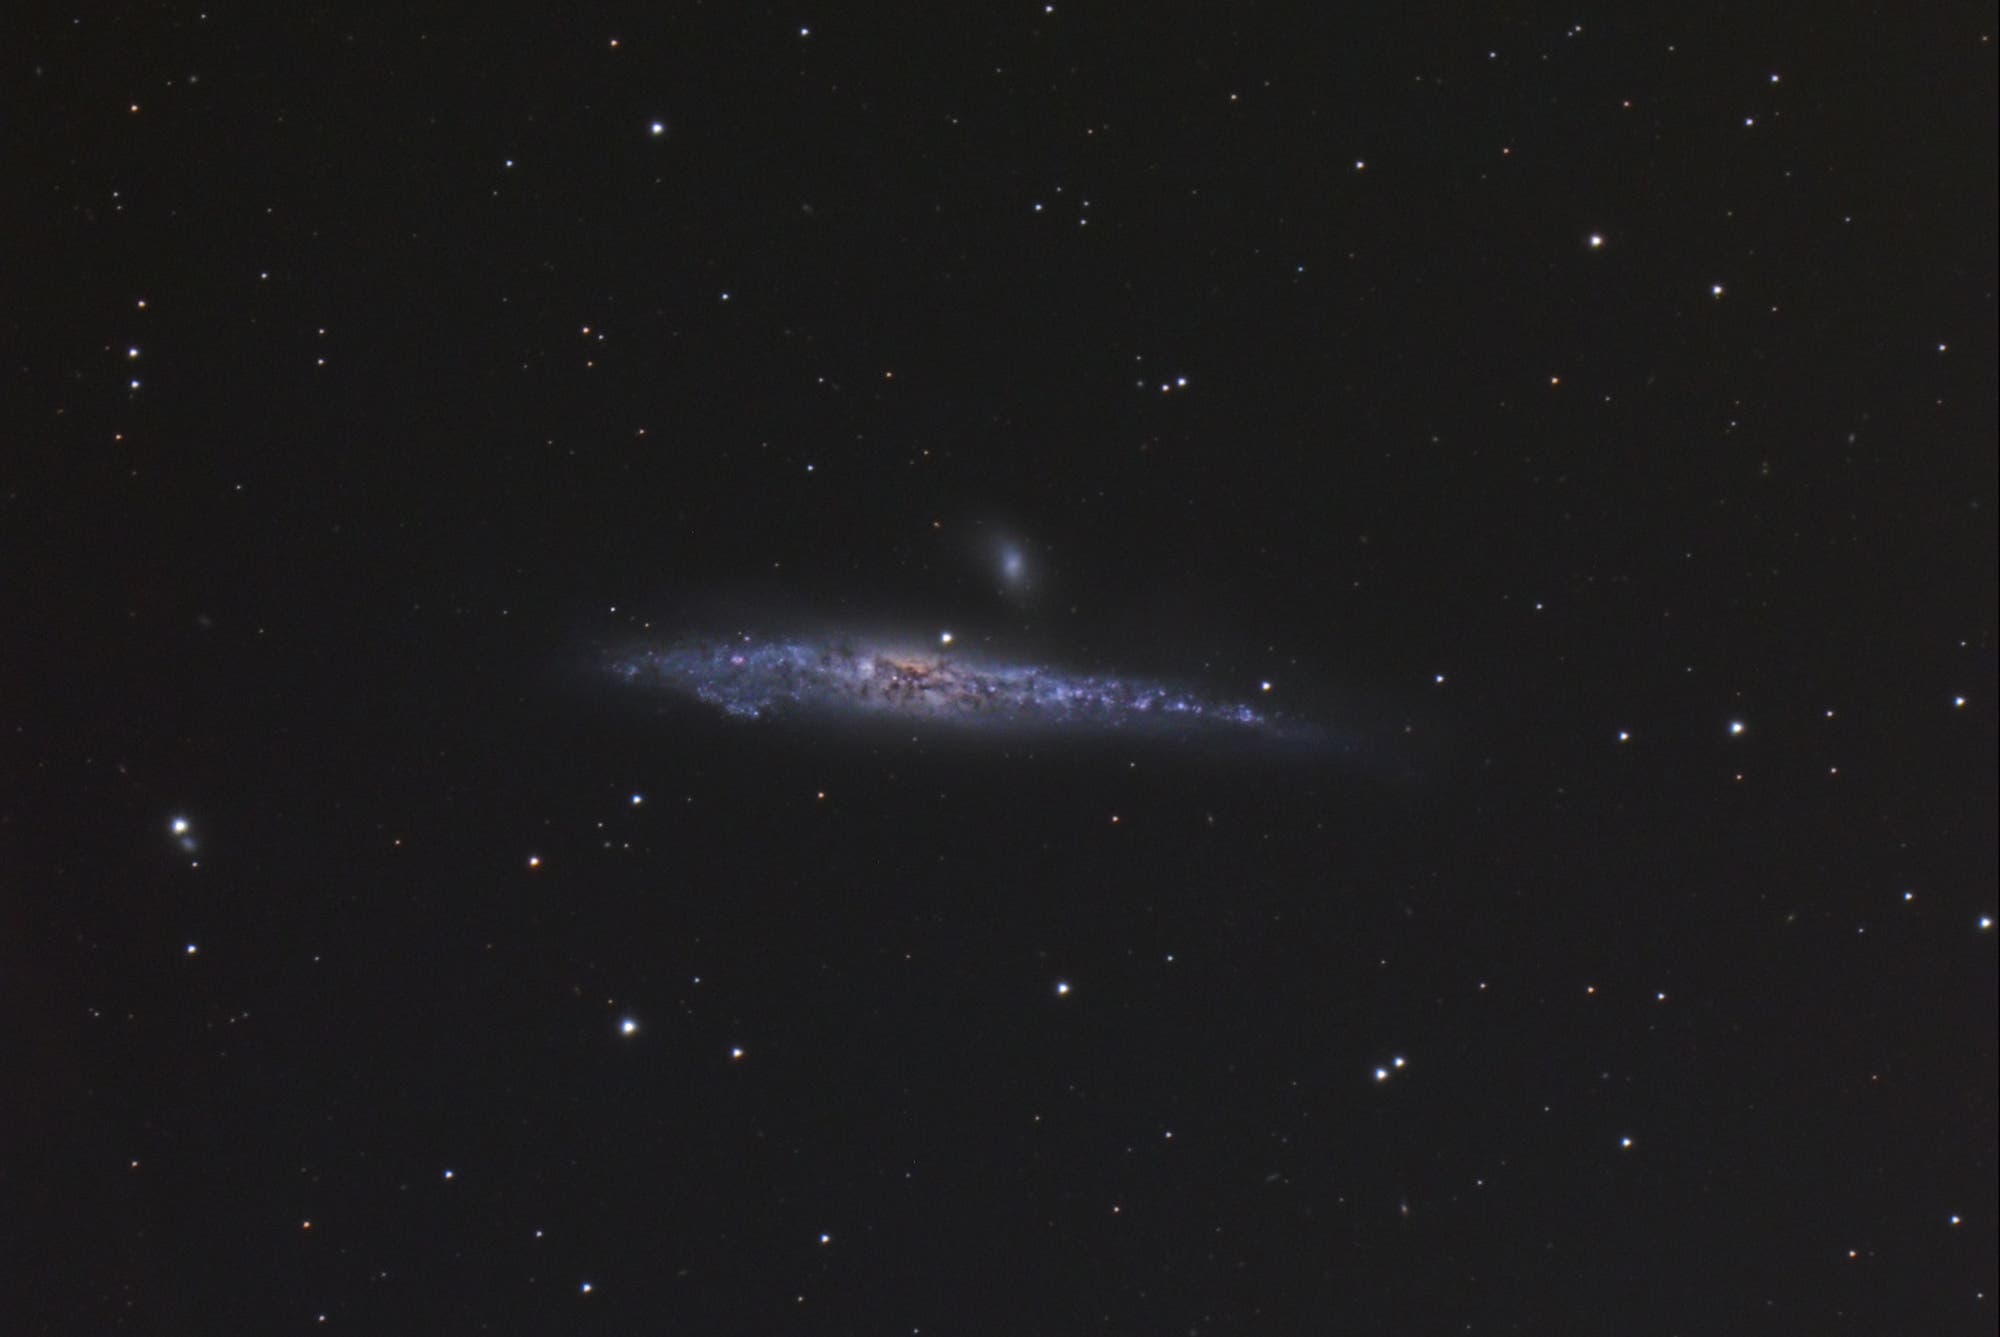 NGC 4631 - die Walgalaxie